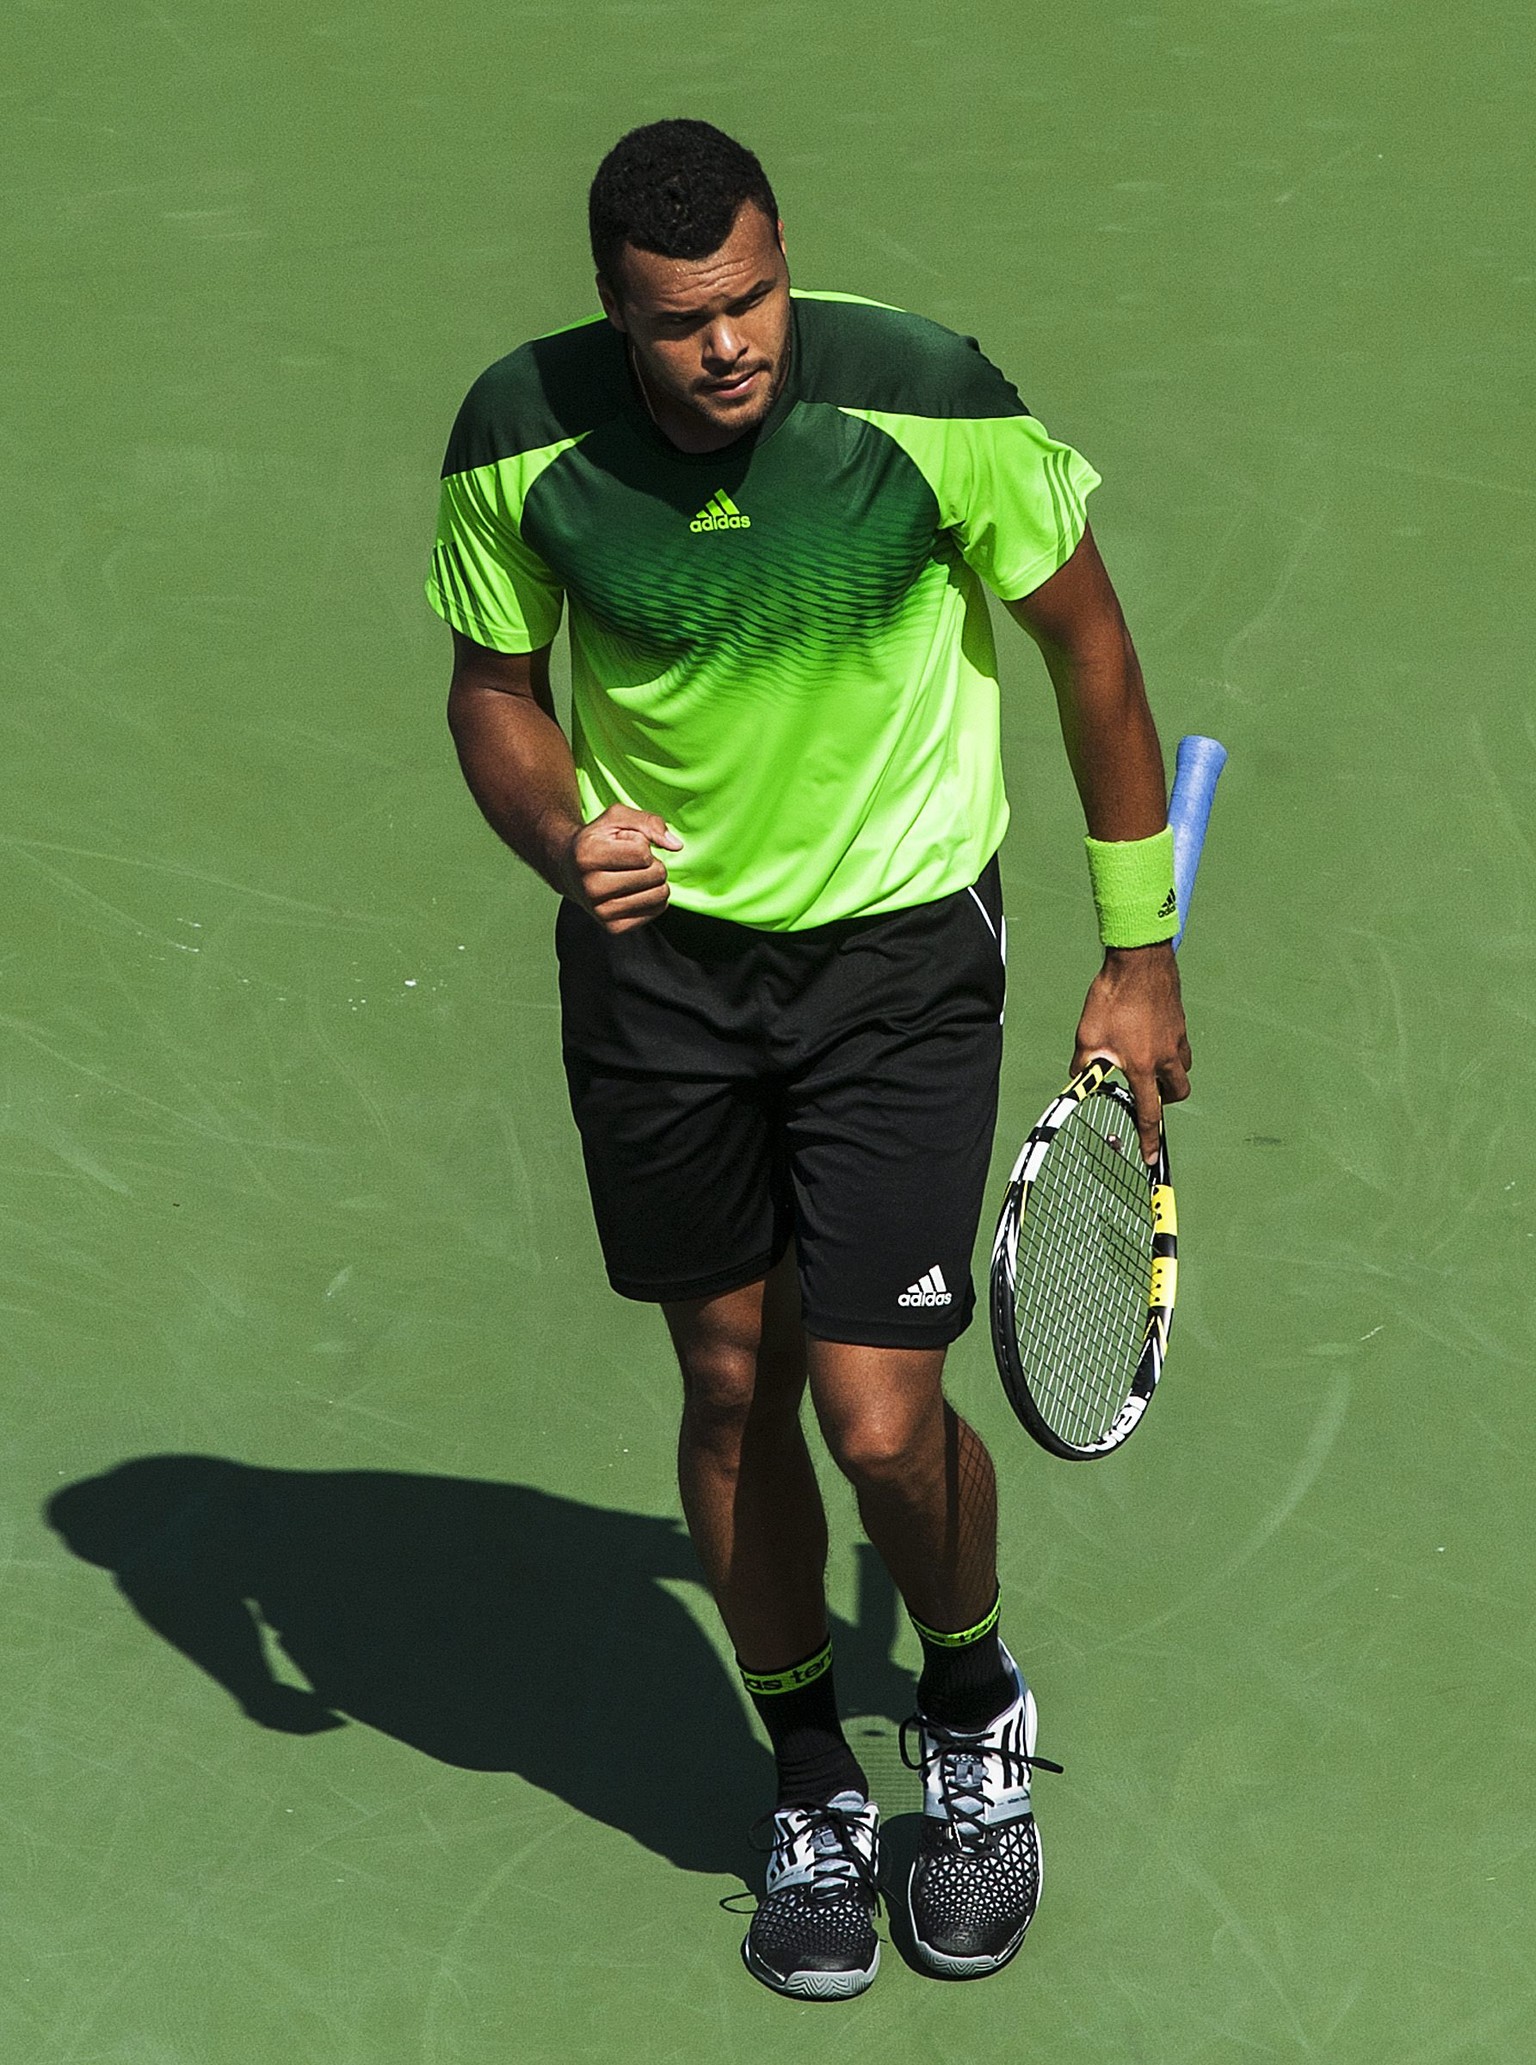 Jo-Wilfried Tsonga freut sich über den Turniersieg in Toronto. Er bezwingt Roger Federer mit 7:5 und 7:6.